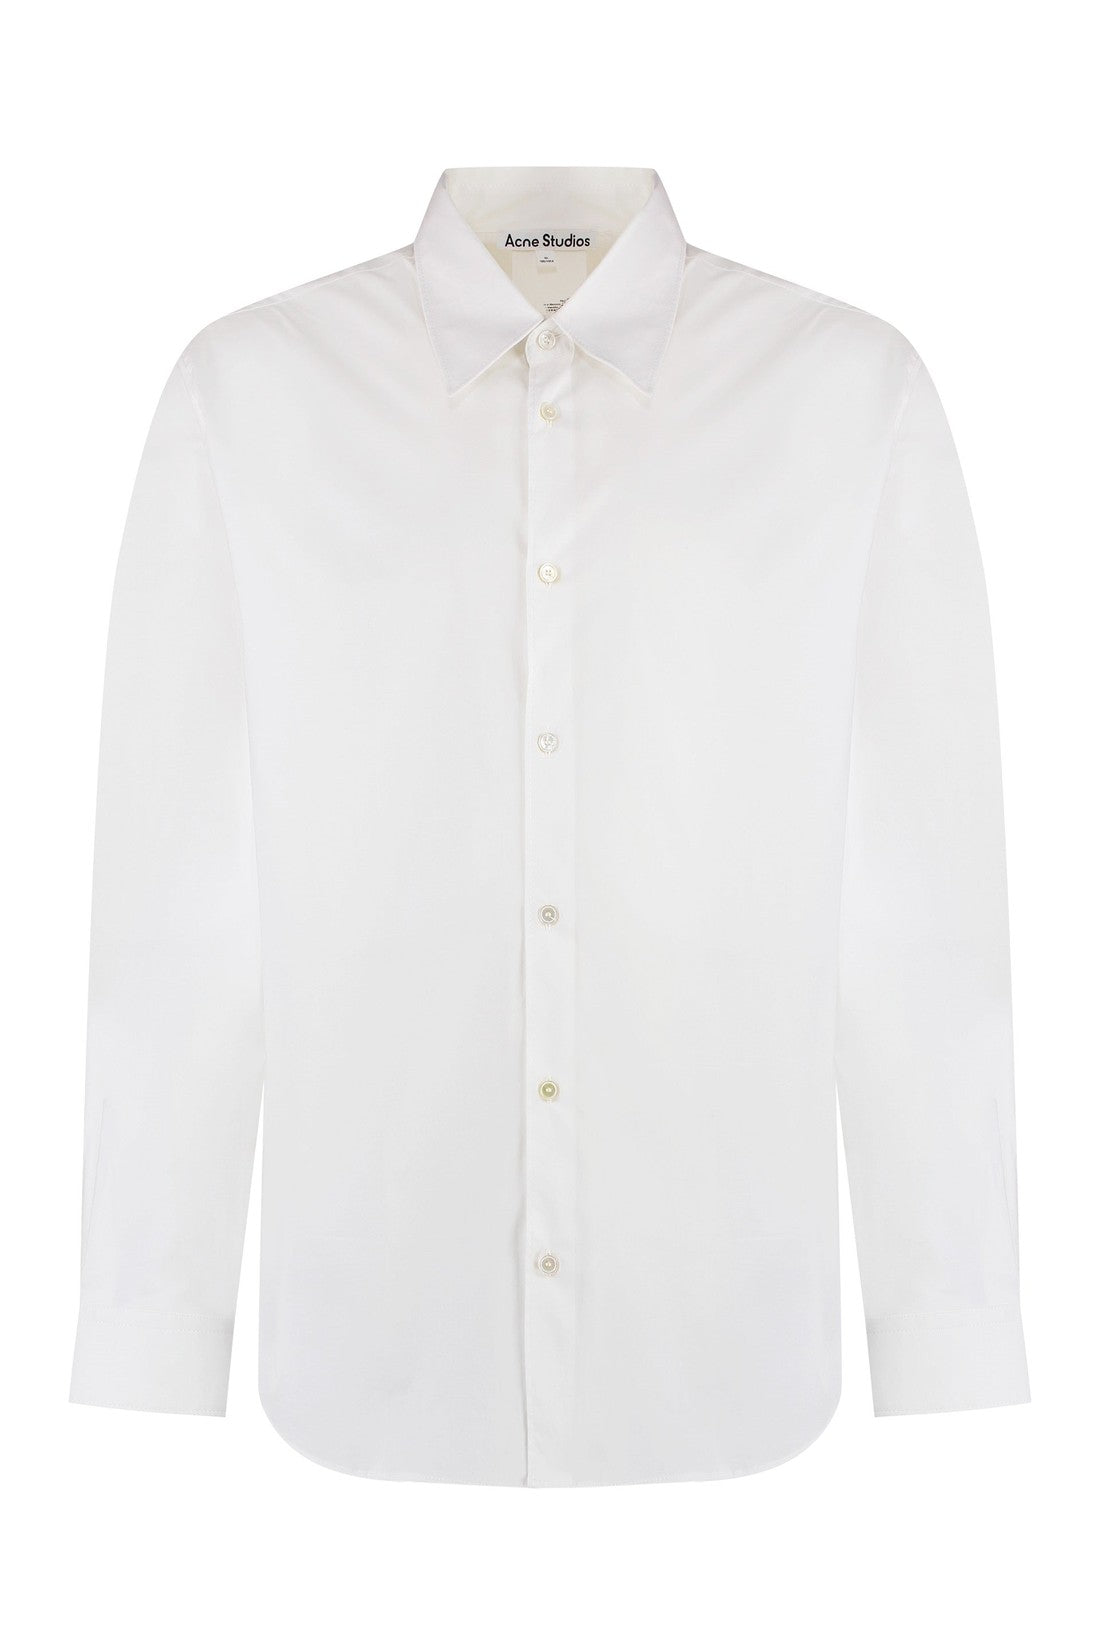 Acne Studios-OUTLET-SALE-Cotton shirt-ARCHIVIST